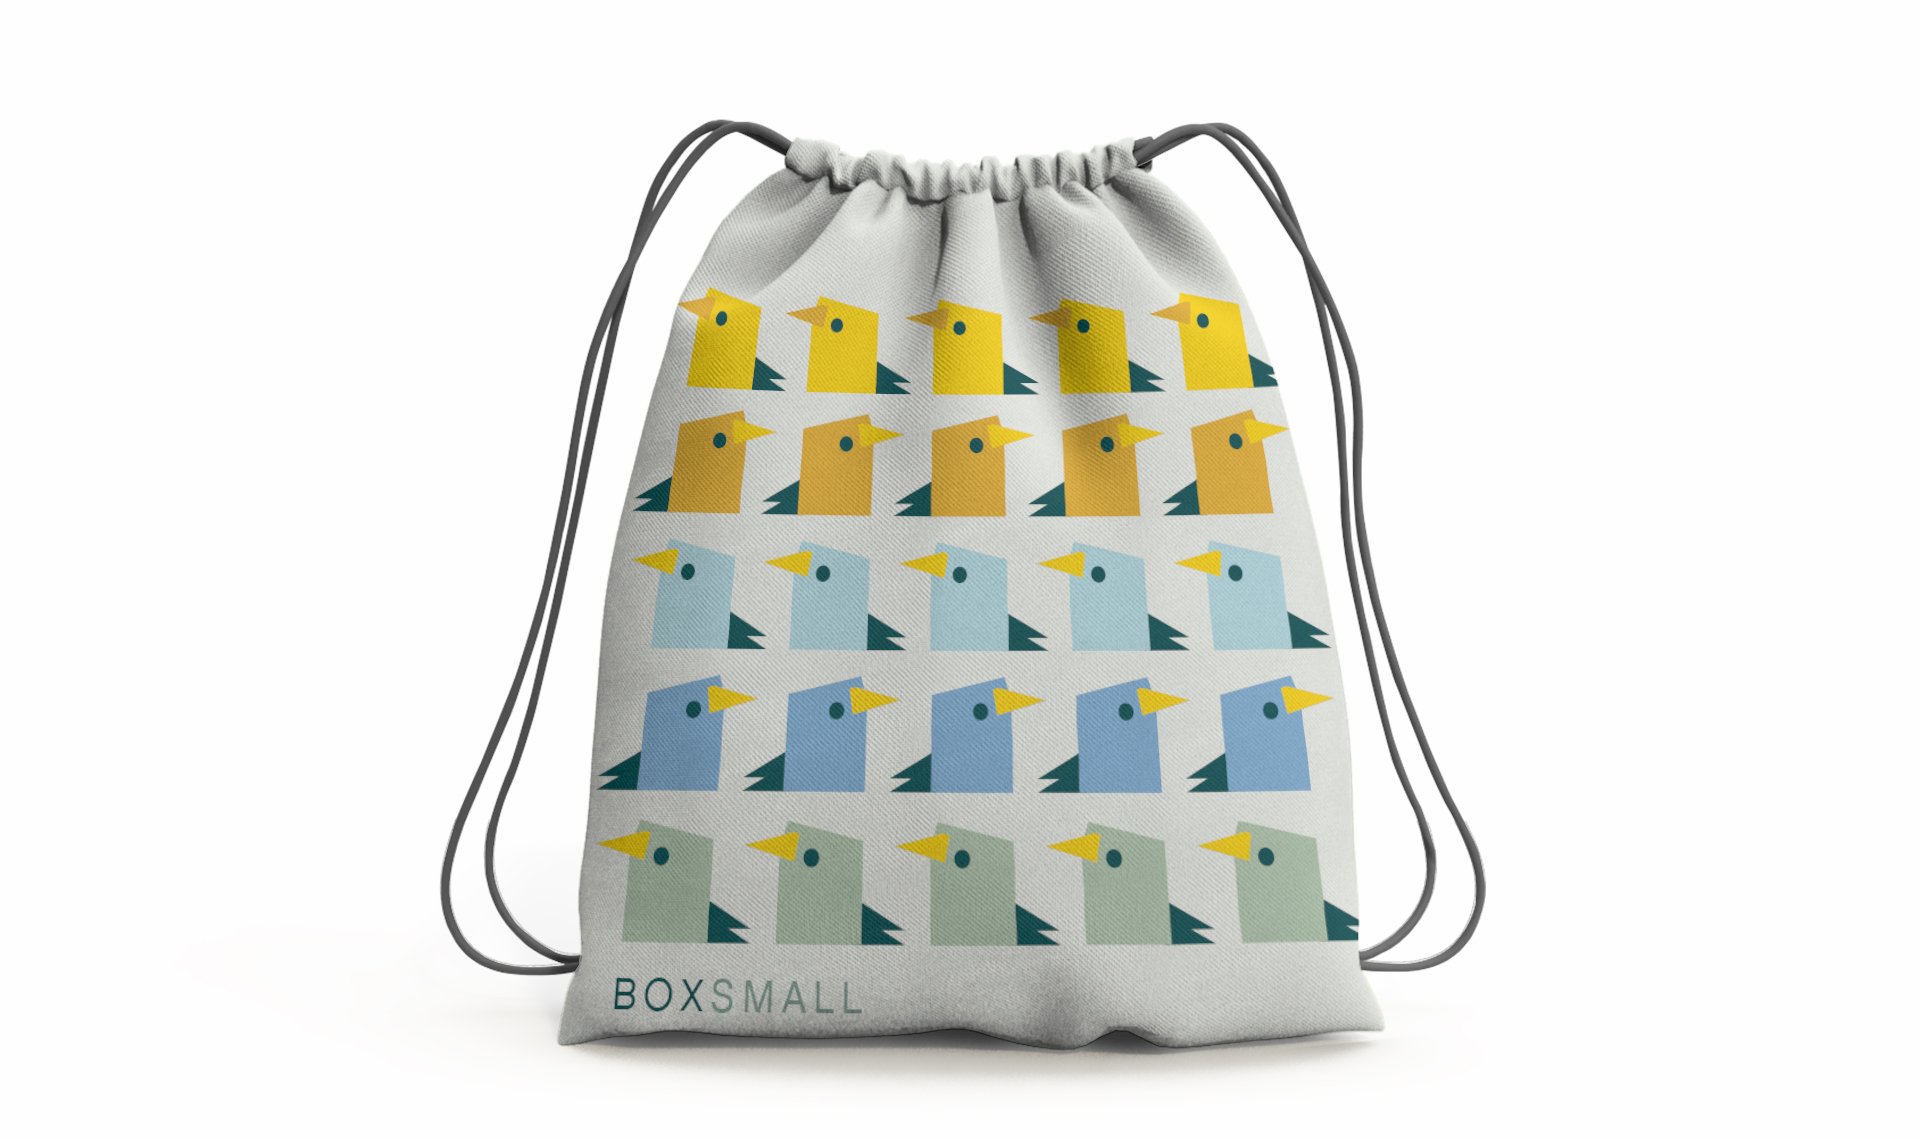 BoxSmall Edinburgh drawstring bag design